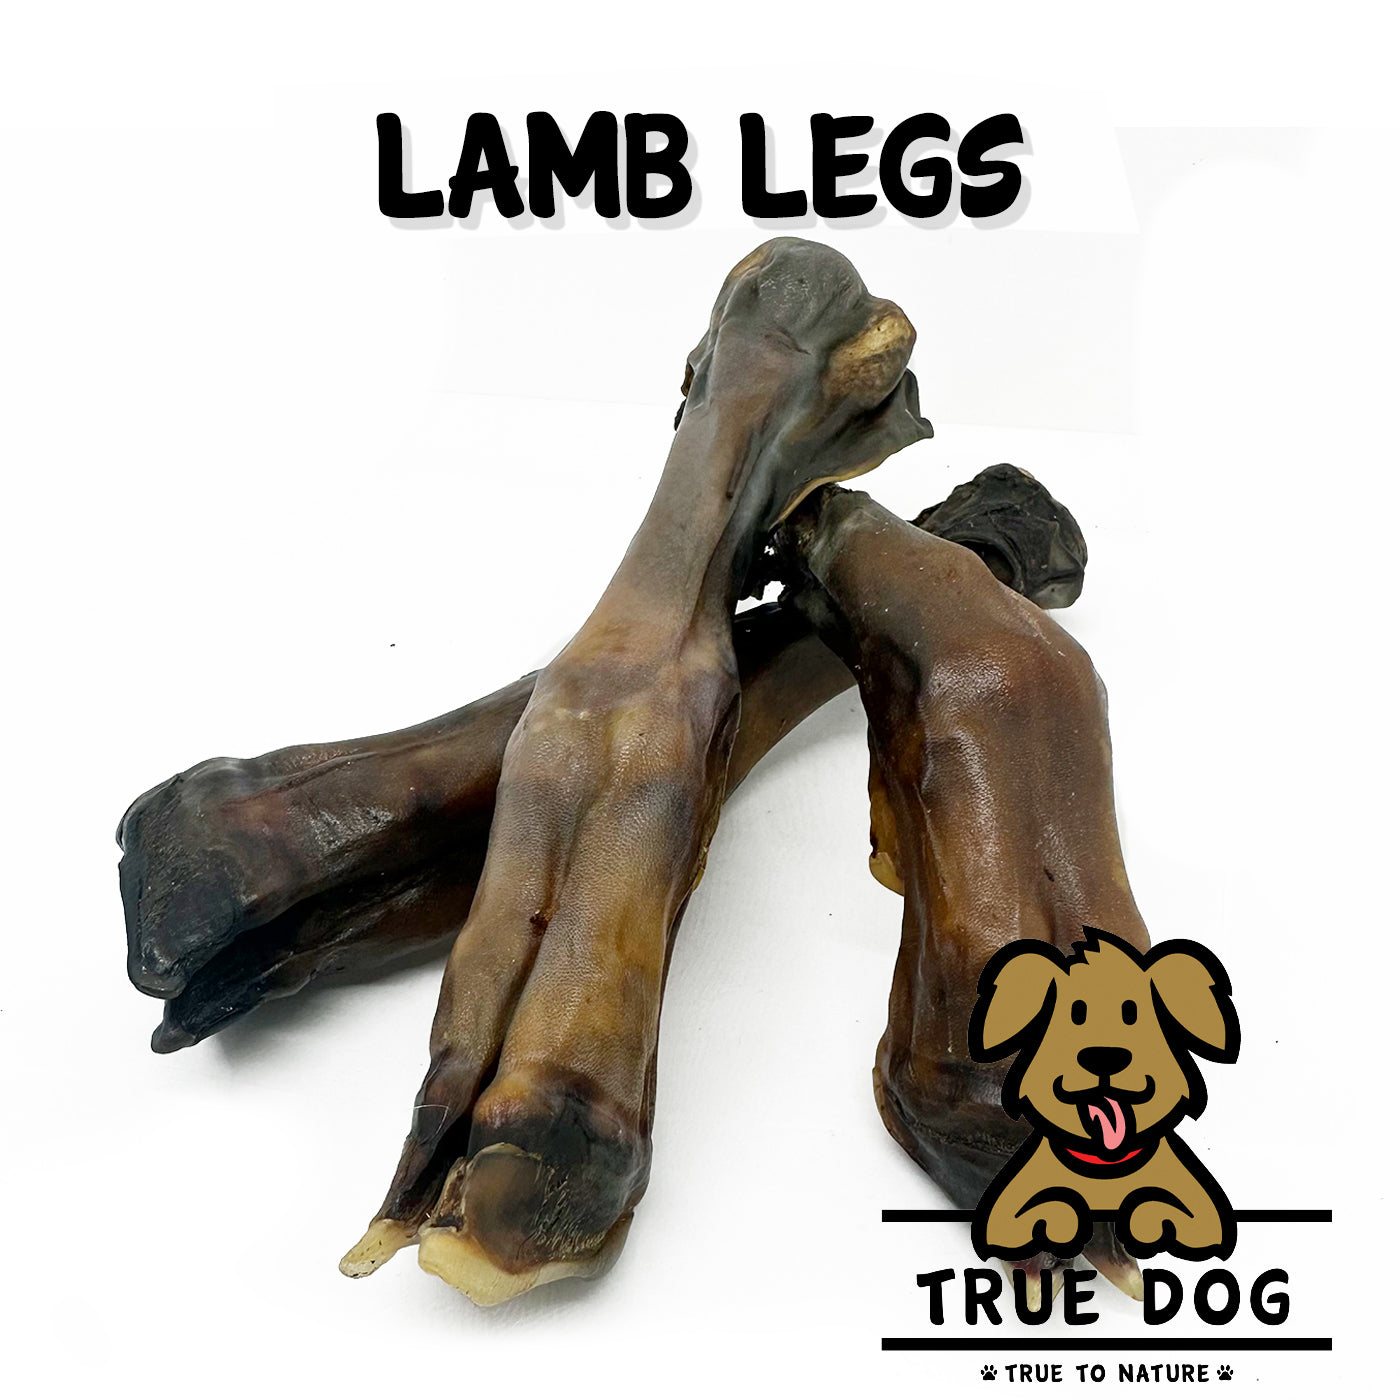 Lamb Legs